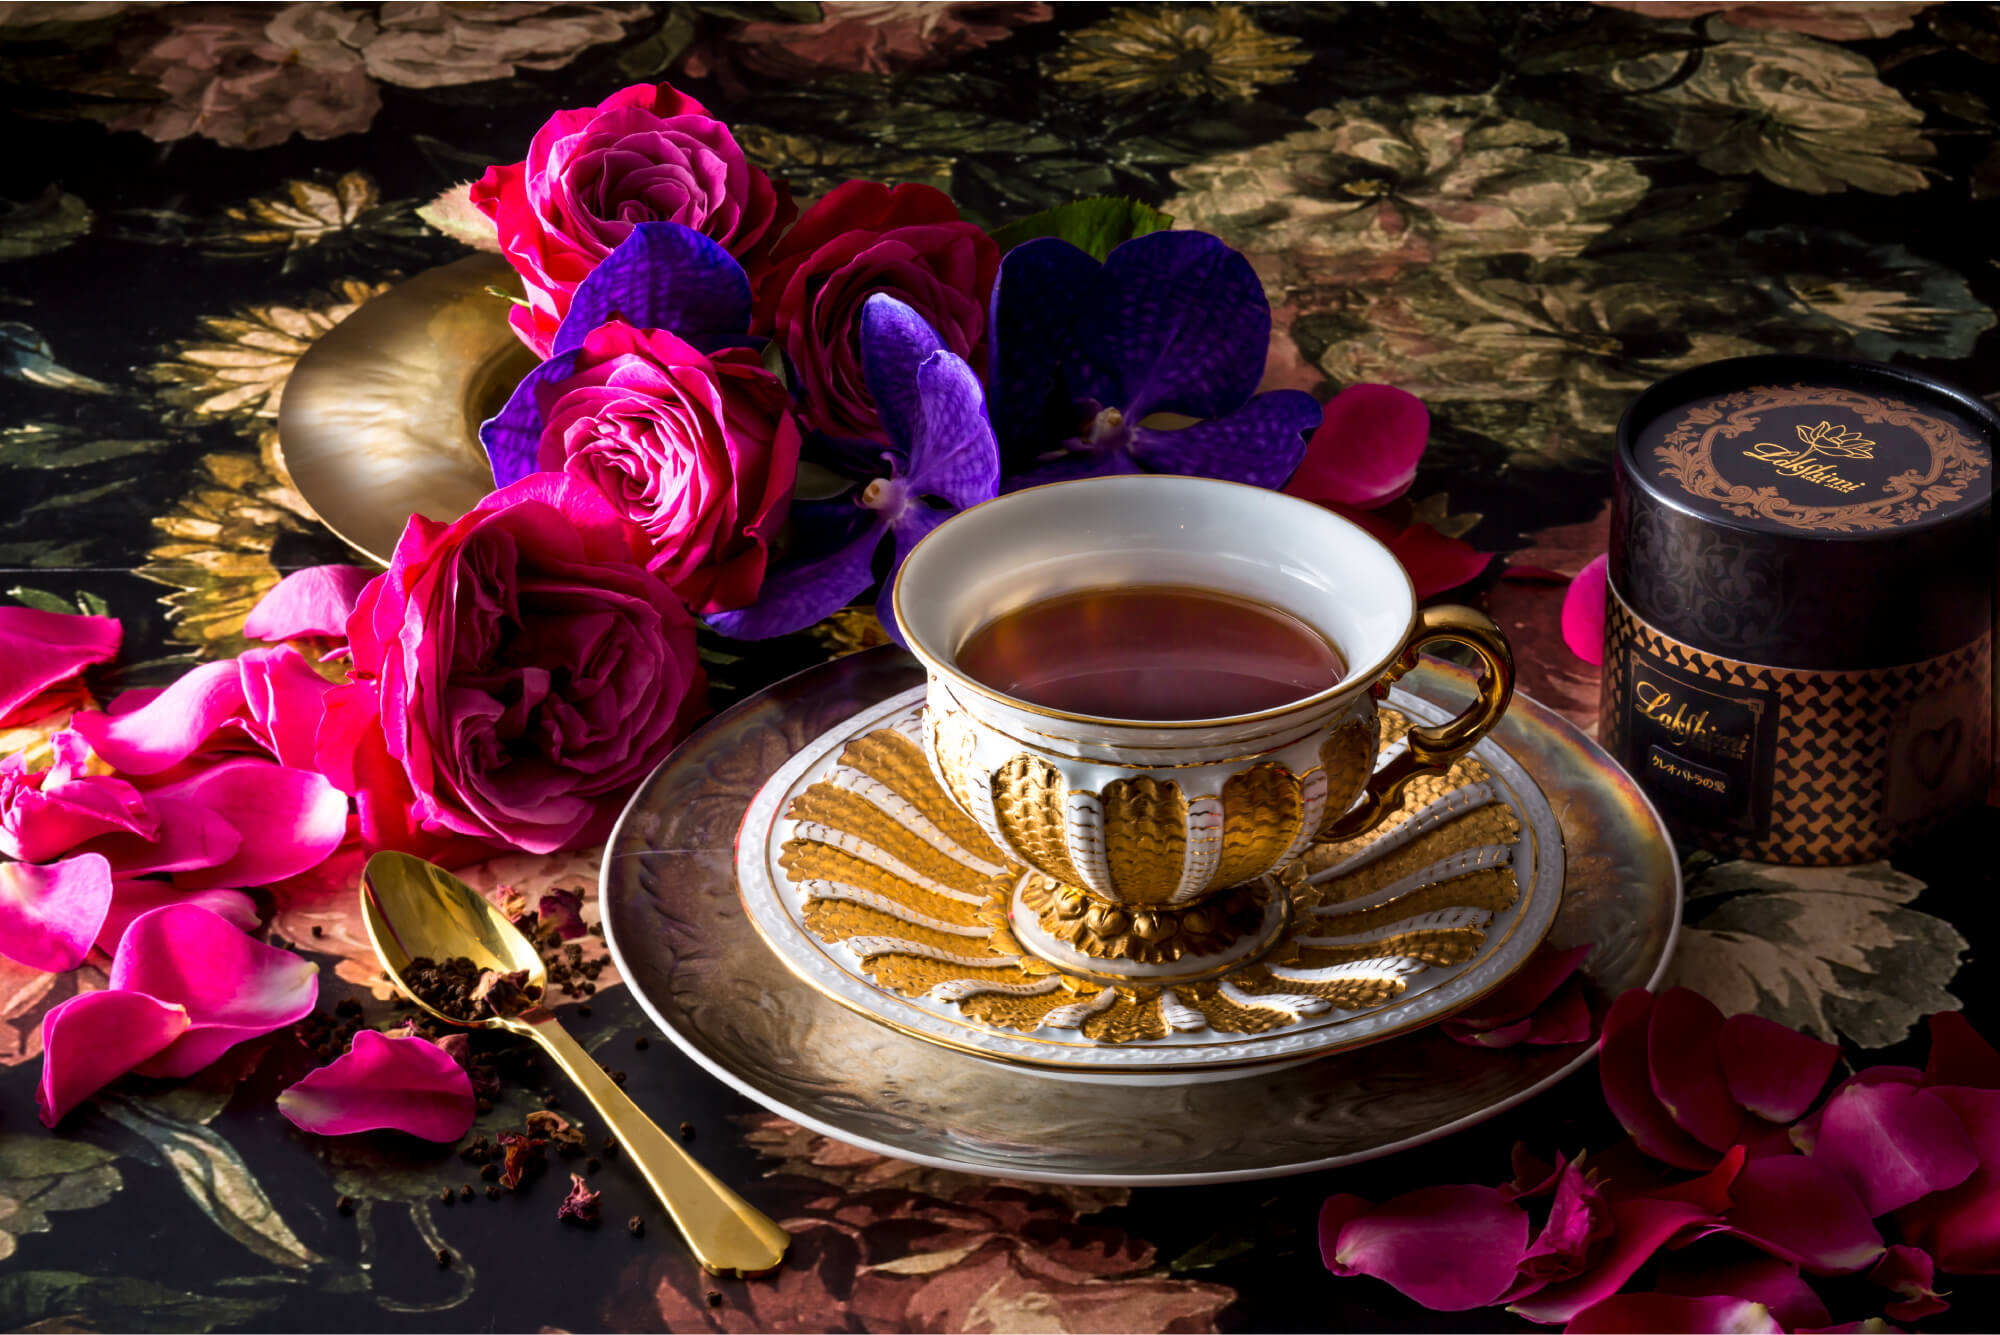 バラとカップ1杯の紅茶